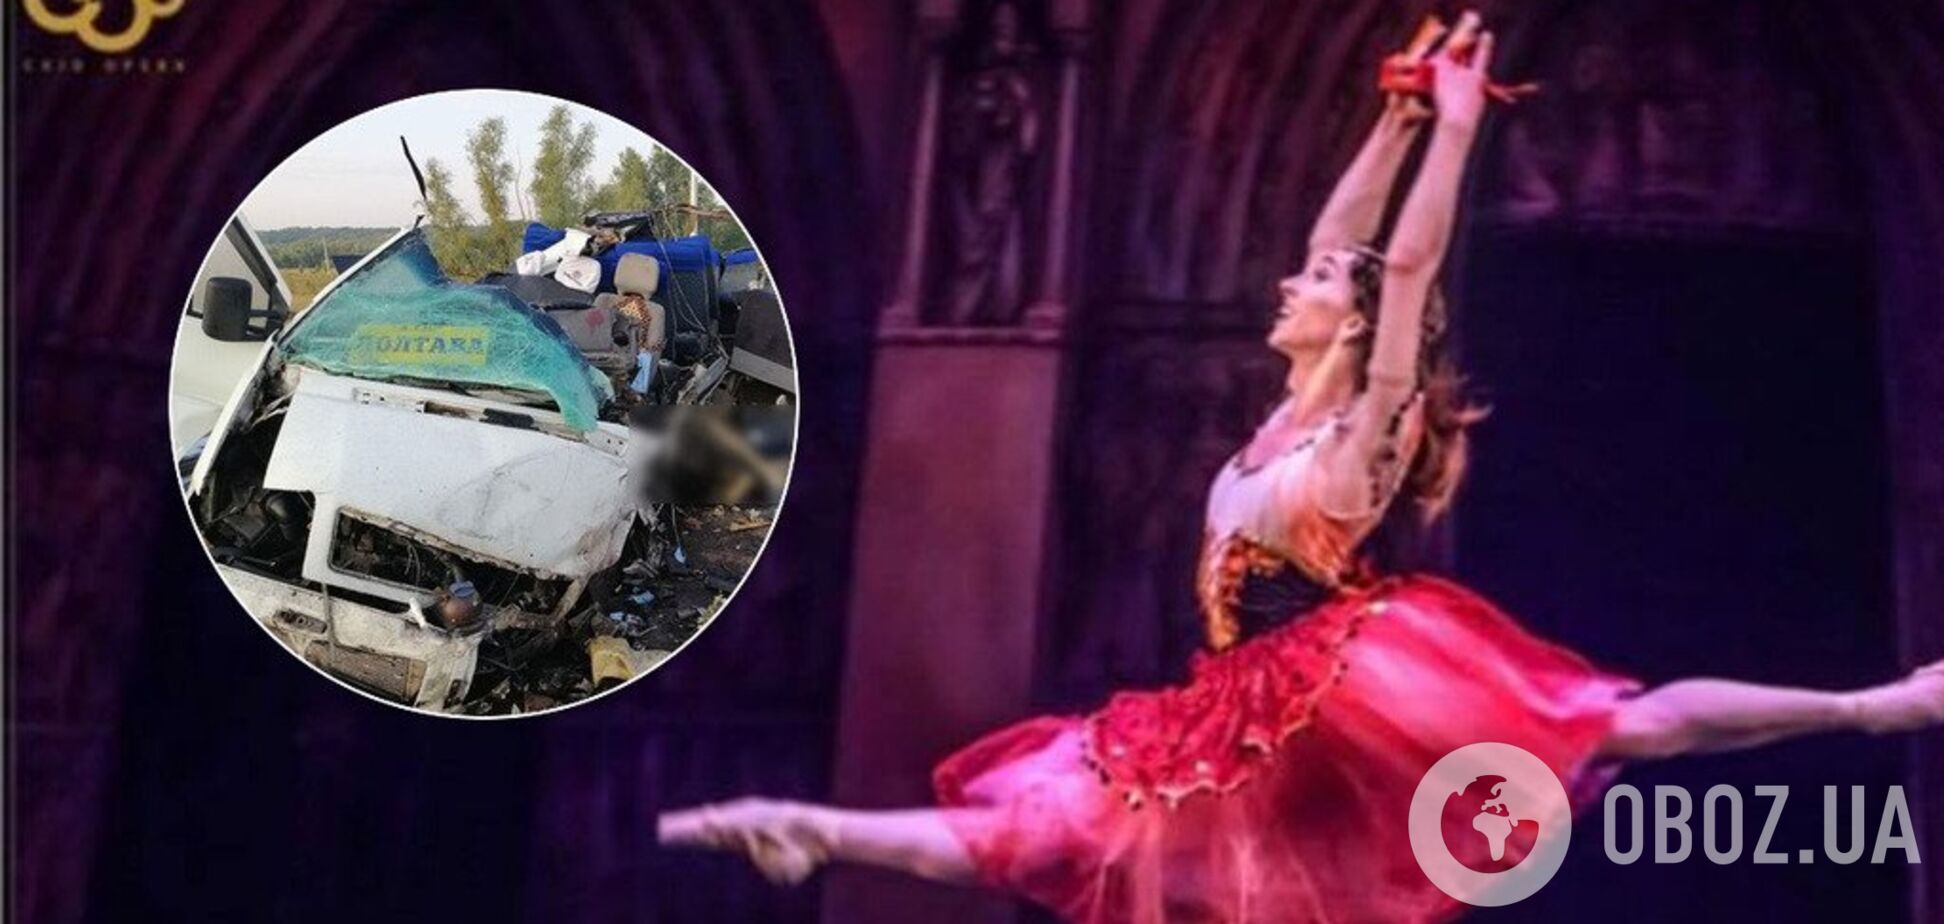 'Дыра в душе': подробности страшной гибели известной балерины под Полтавой